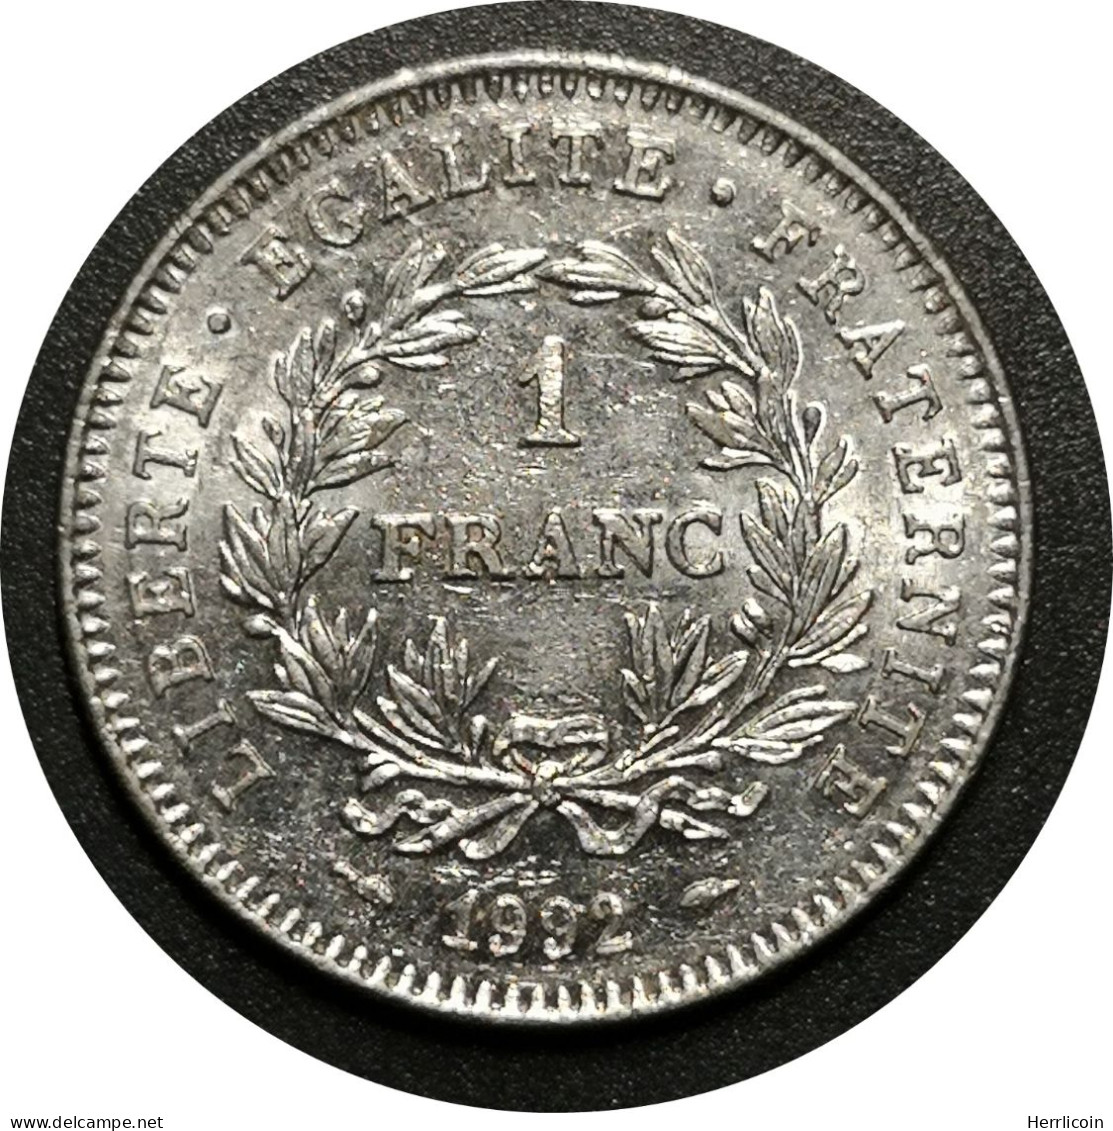 Monnaie France - 1992 - 1 Franc République Nickel - Commémoratives